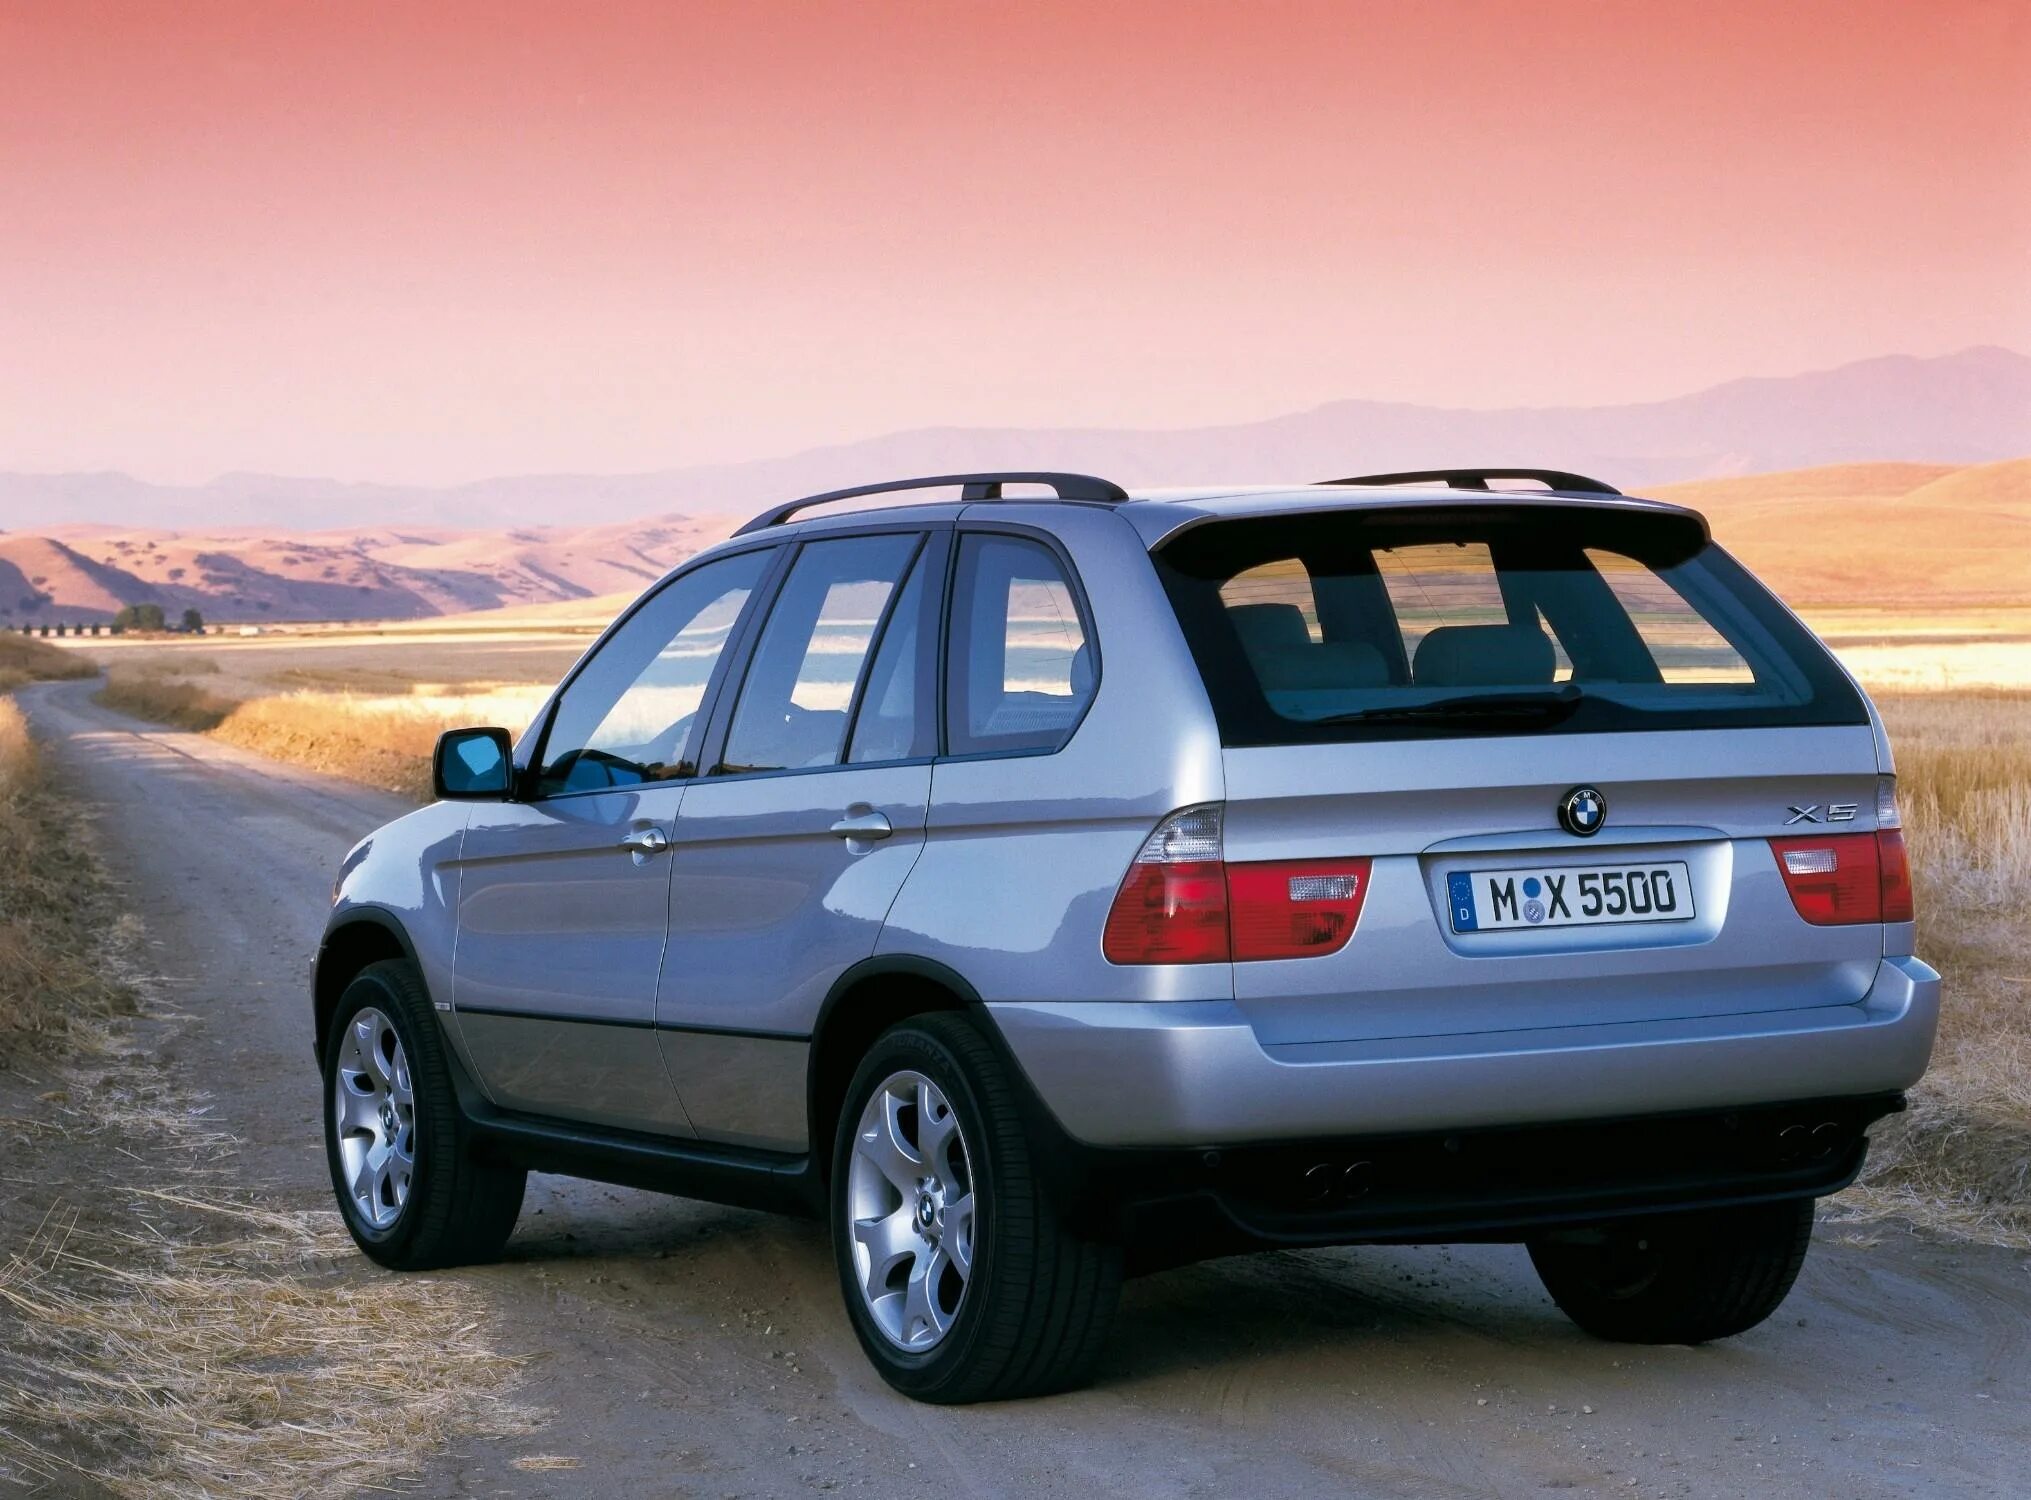 BMW x5 2000. БМВ х5 1999-2003. BMW x5 e53 2000. BMW x5 1999. Бмв х5 купить екатеринбург